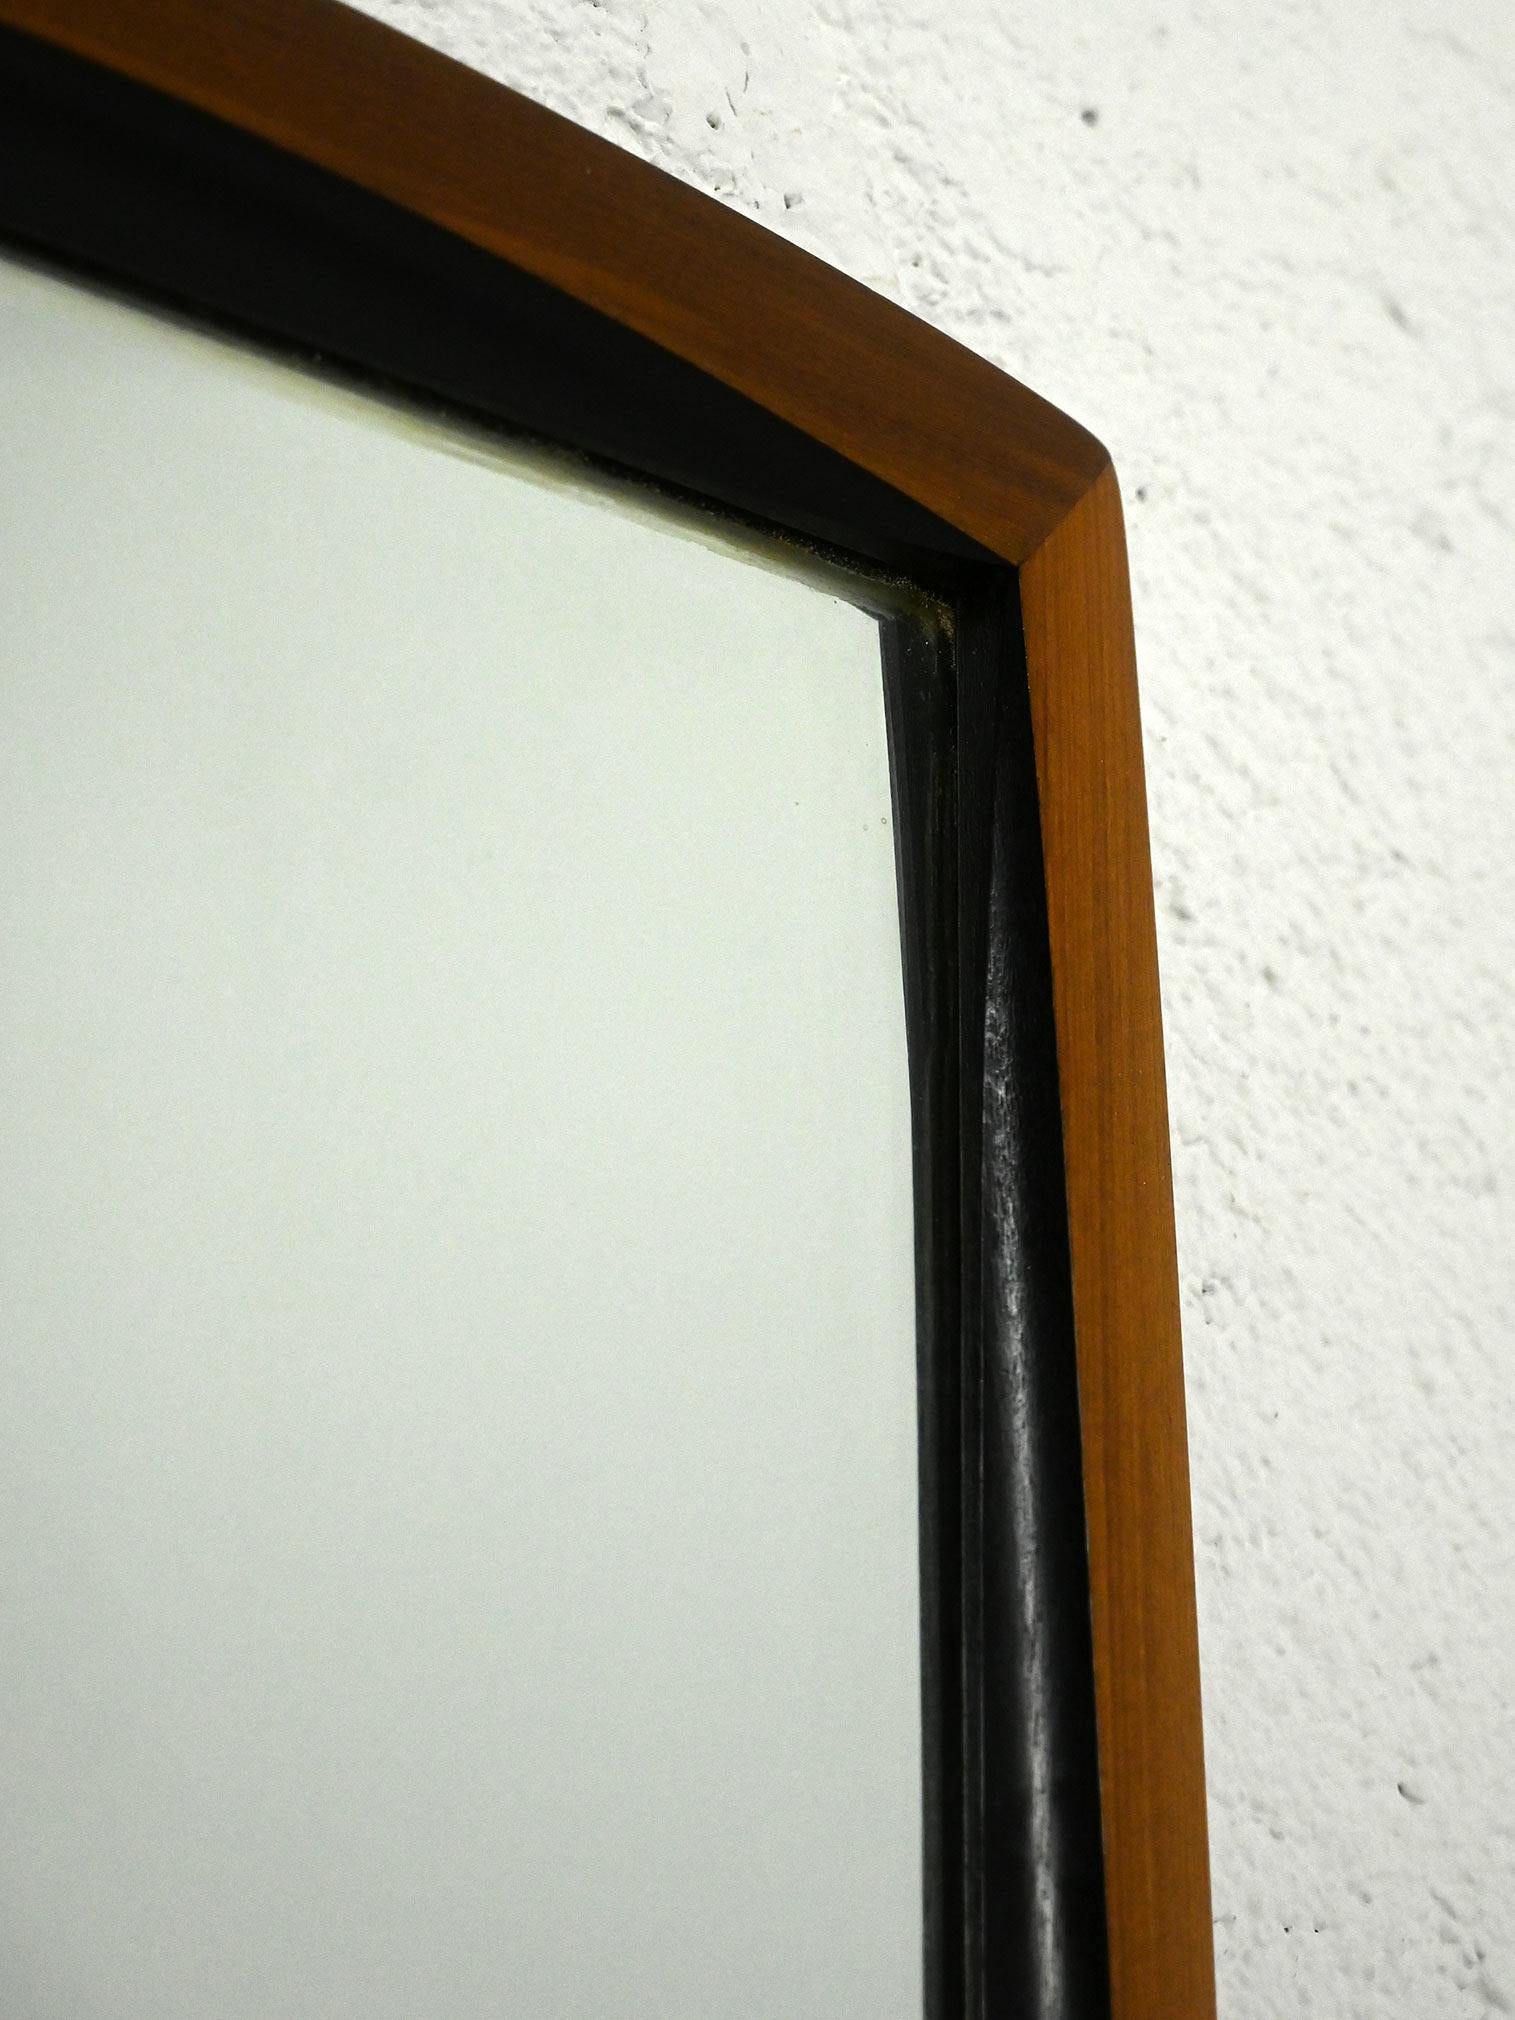 Miroir de fabrication scandinave originale des années 1960.

Miroir Vintage au cadre épais et légèrement saillant de couleur marron foncé. Un détail distinctif est le contour noir autour du miroir, qui accentue l'élégance du design scandinave.

Bon